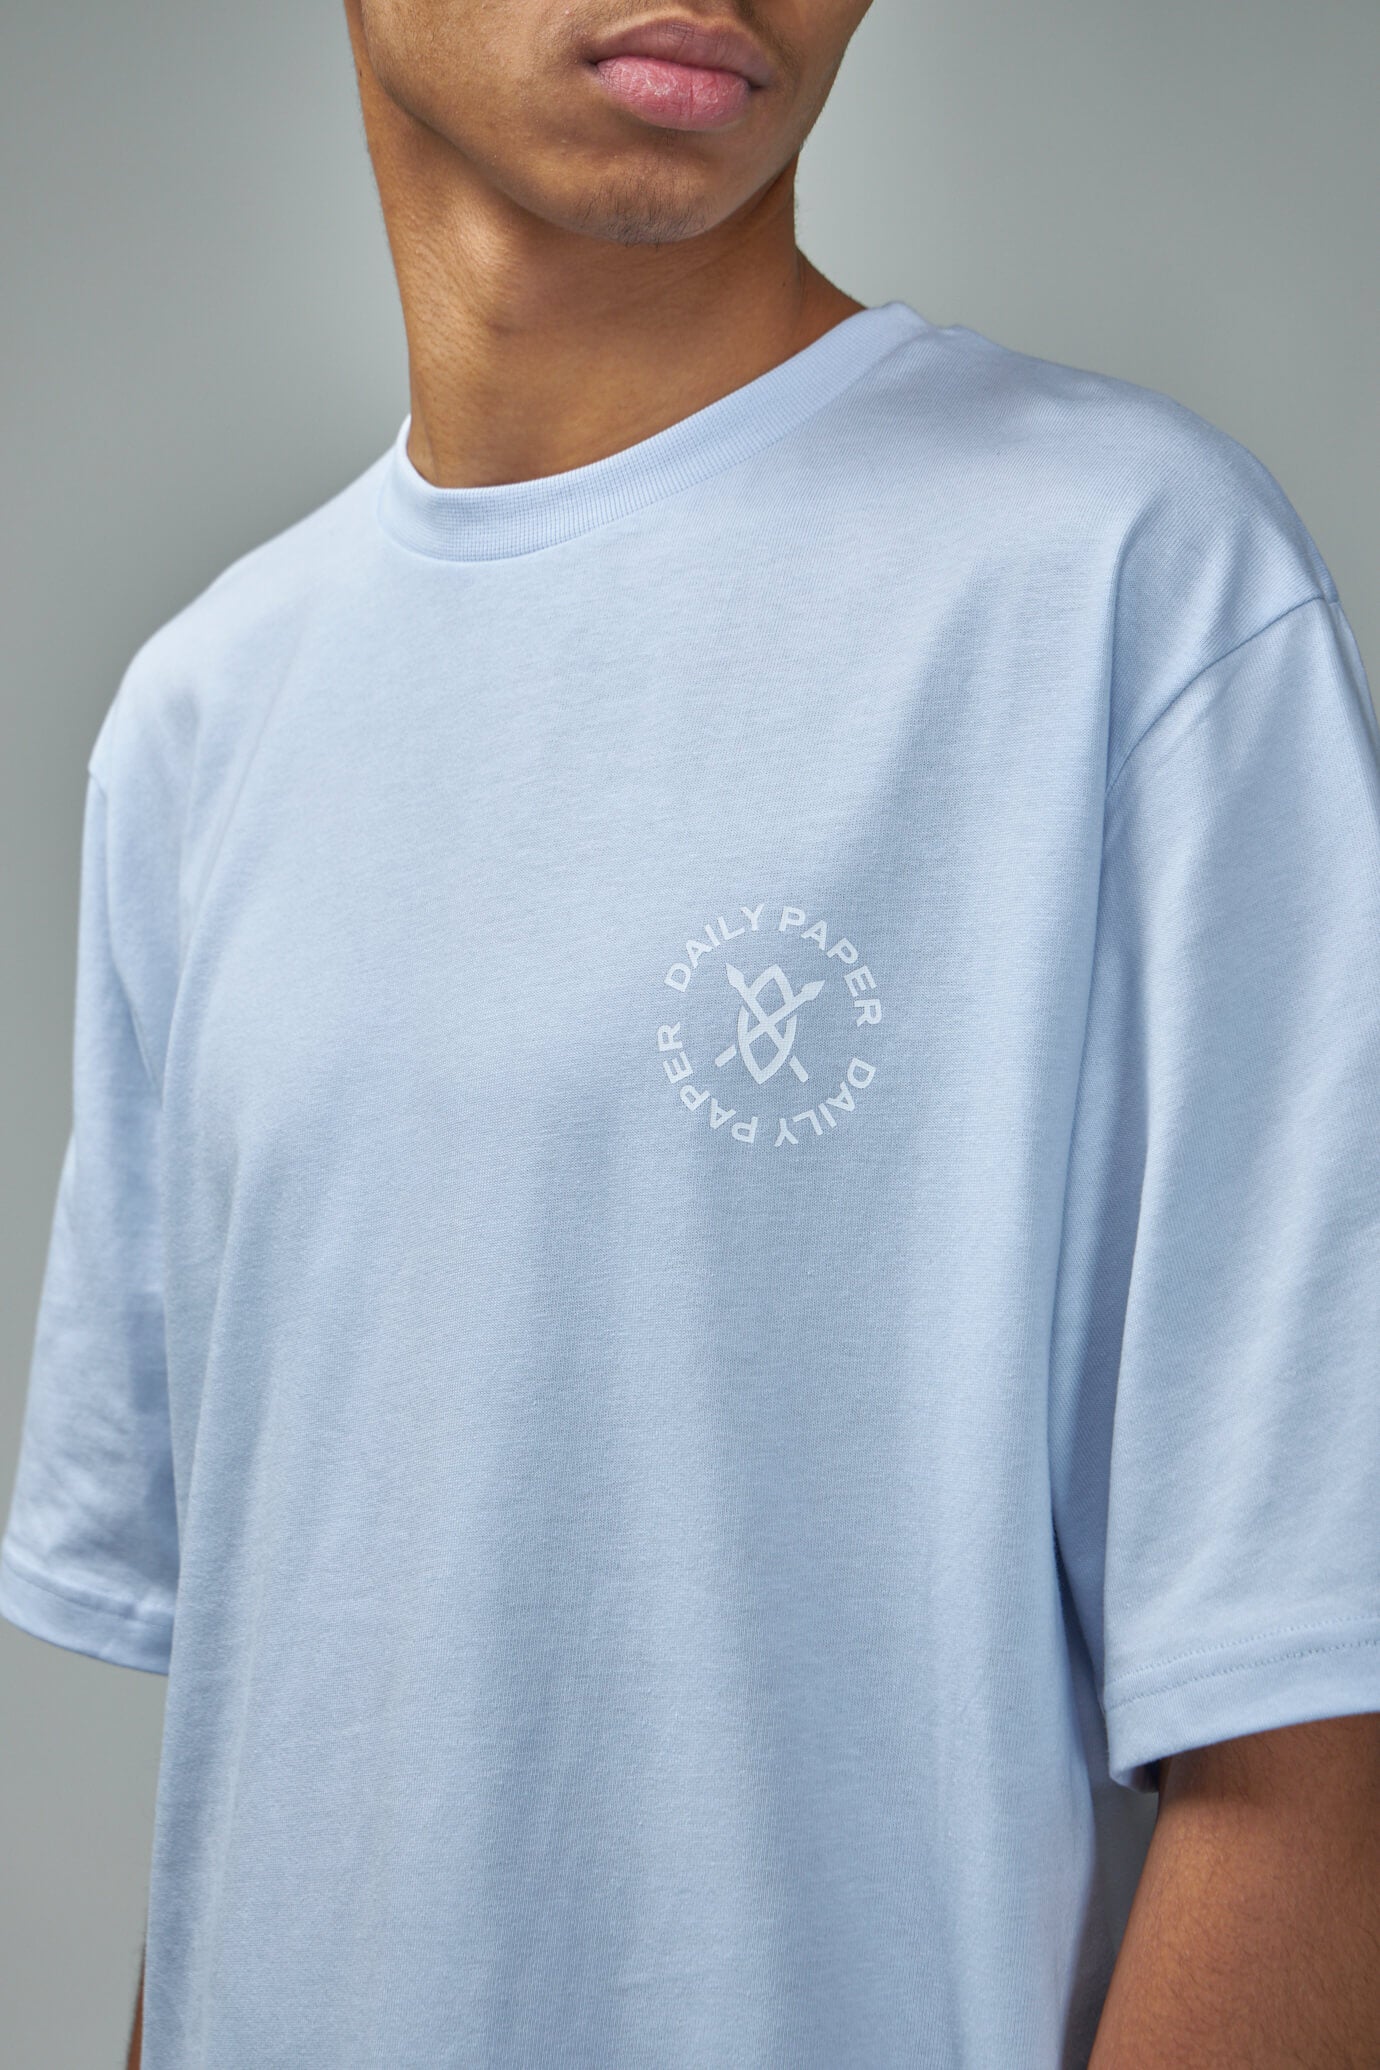 Circle SS T-Shirt